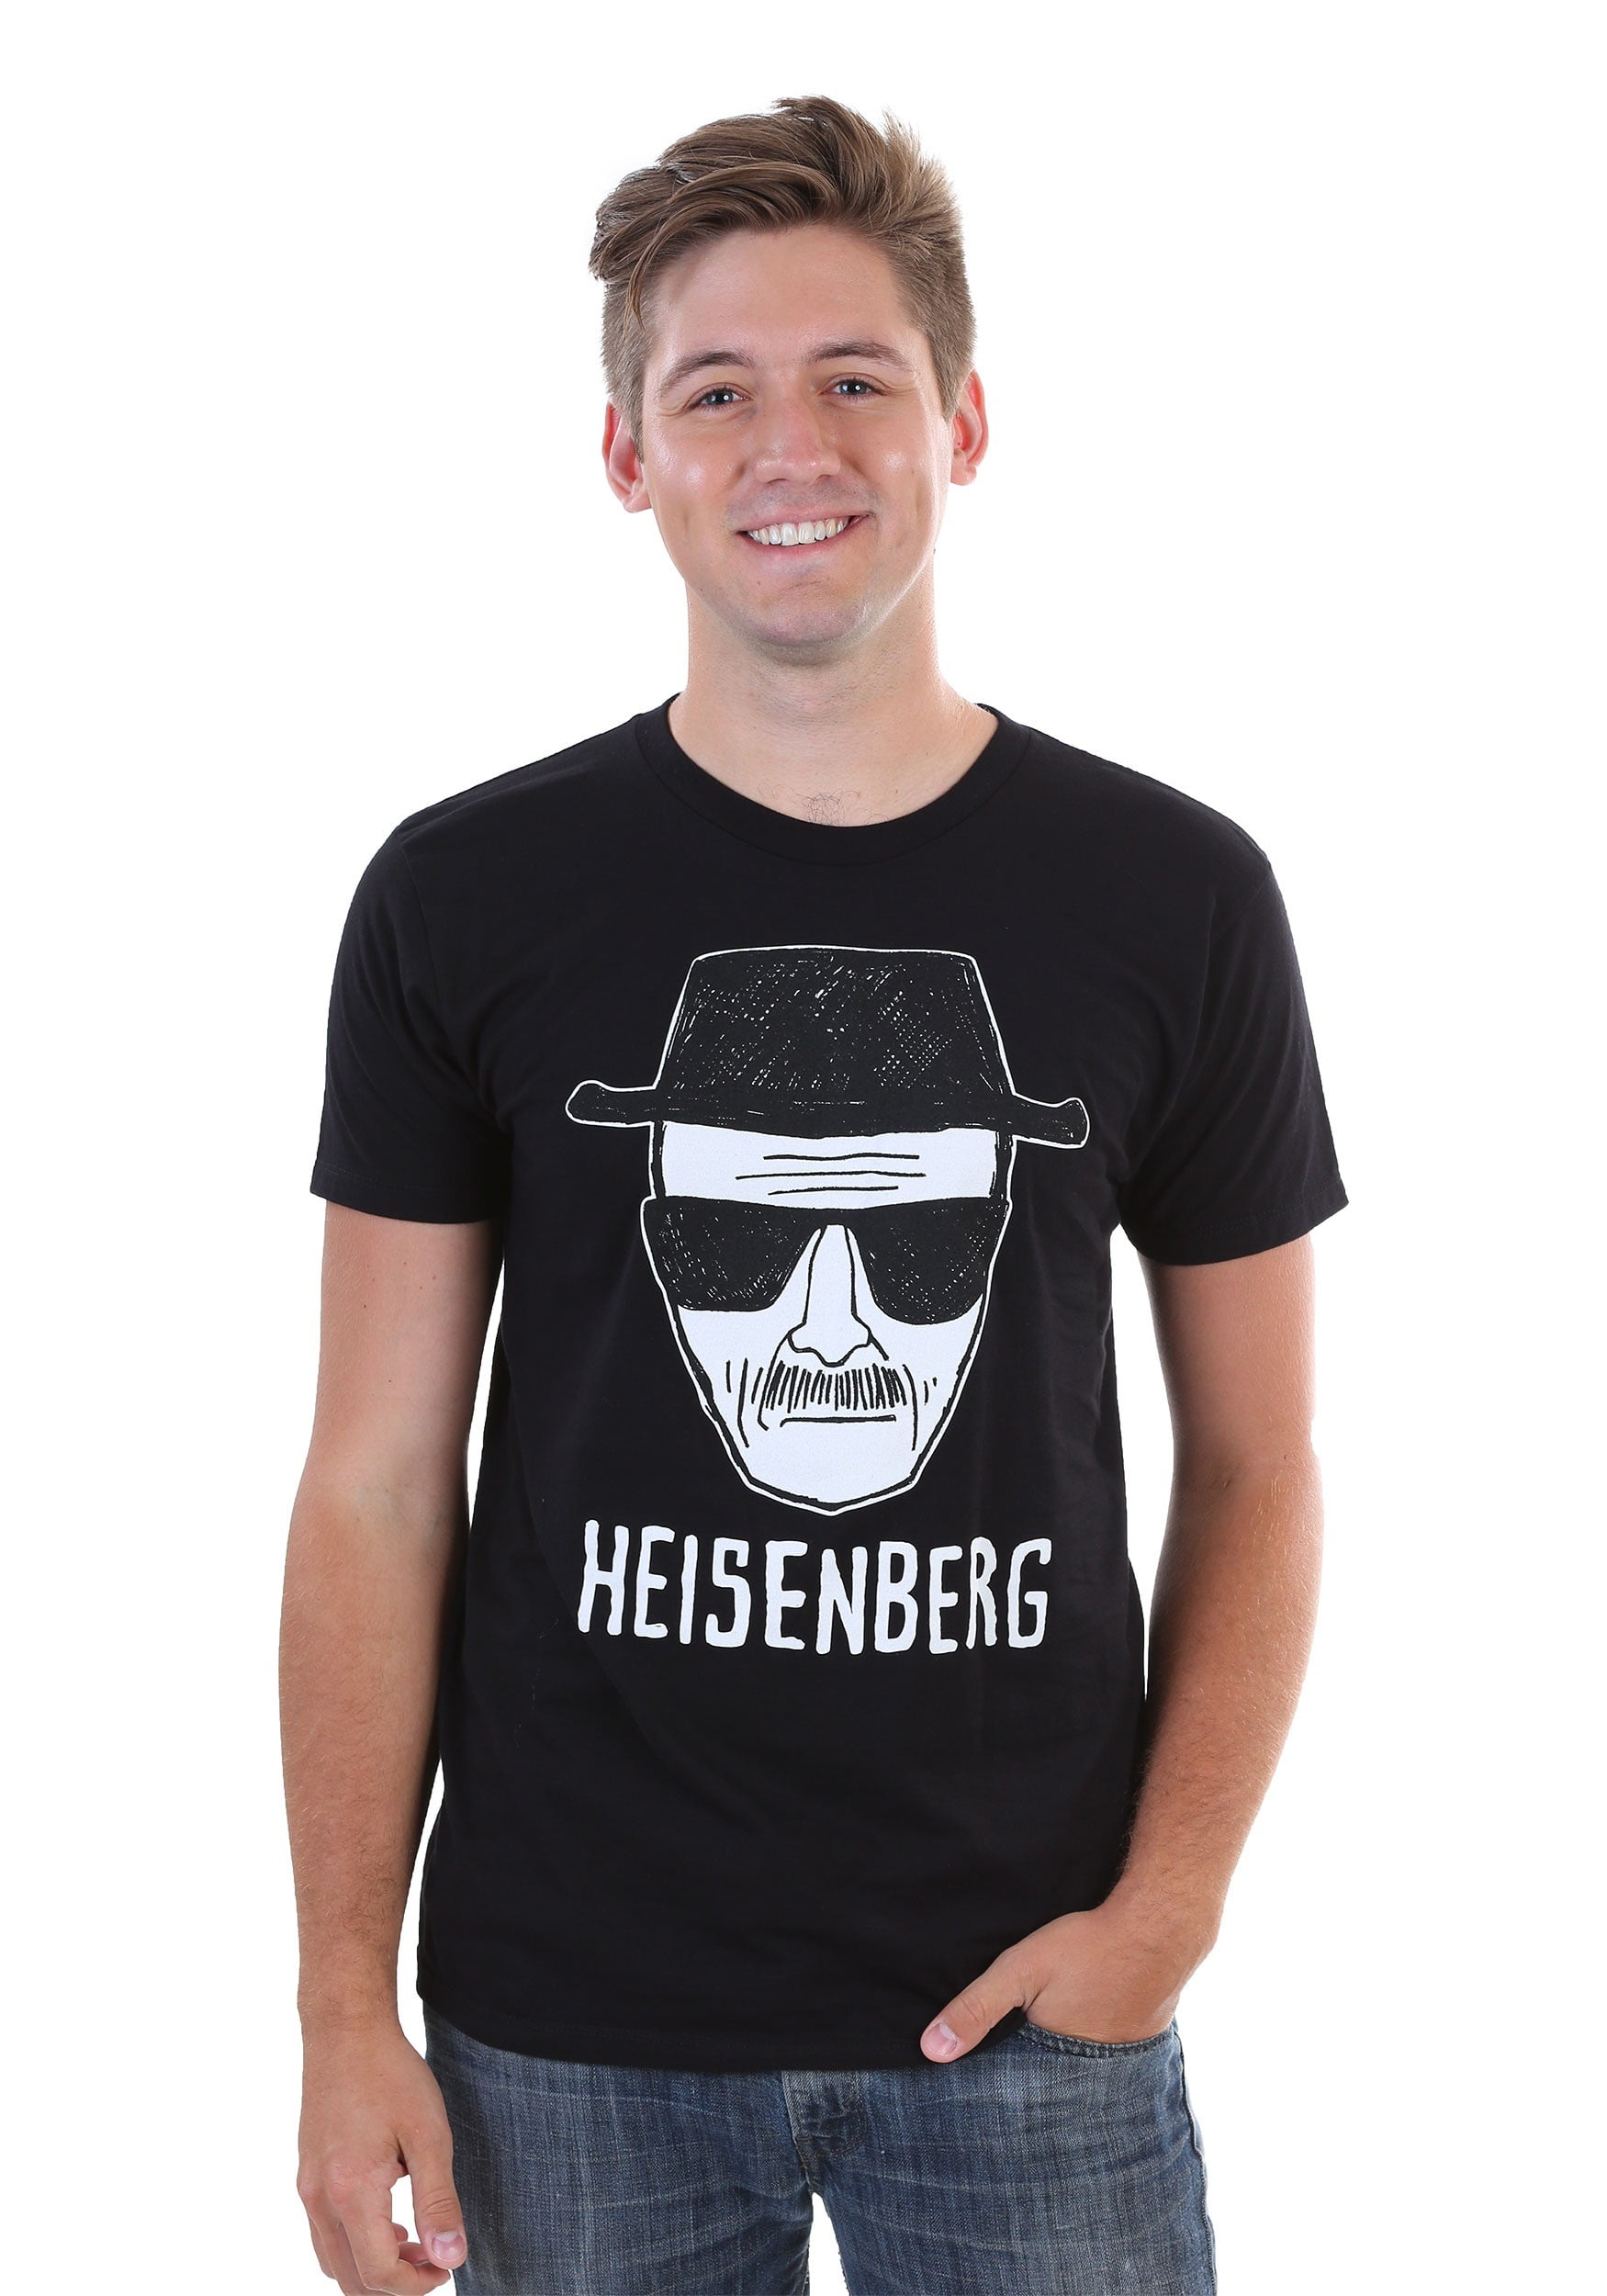 Heisenberg T-Shirt-Inspiré Par Breaking Bad